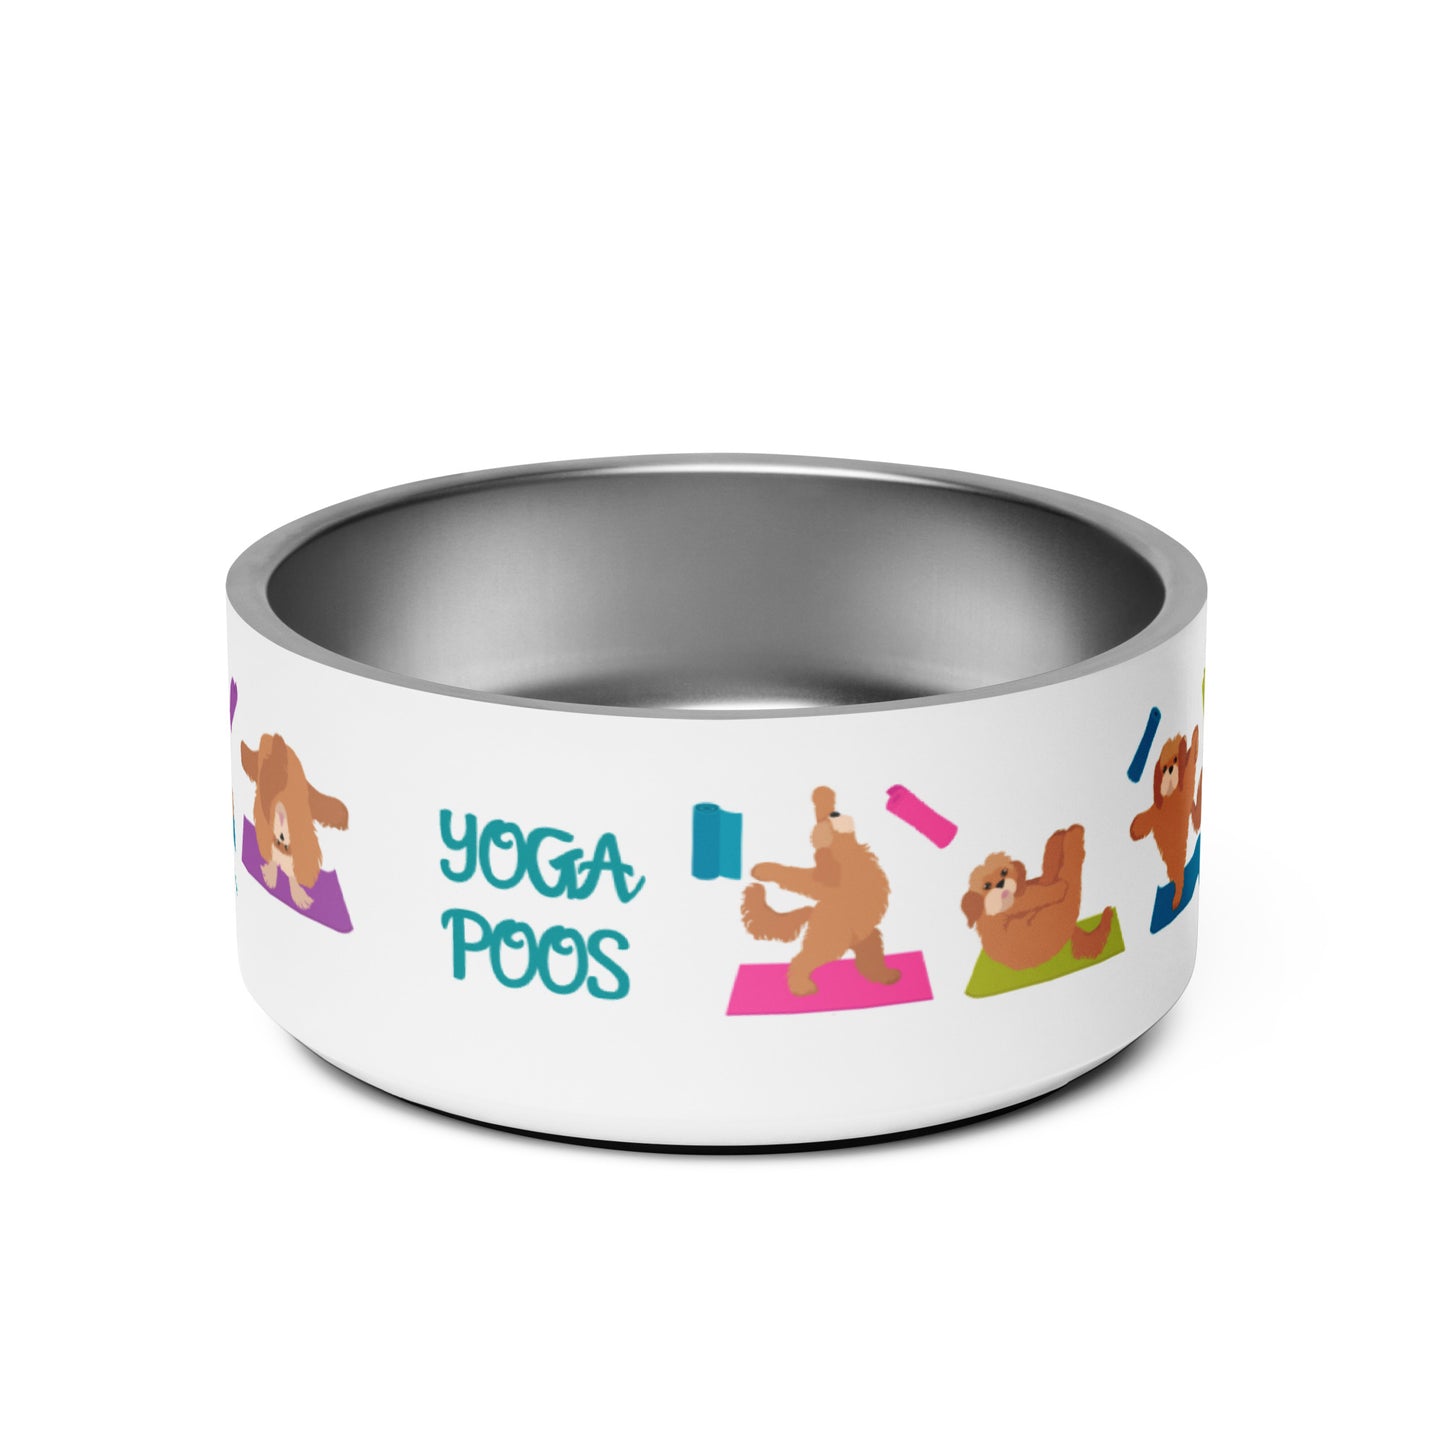 "Yoga Poos" large pet bowl